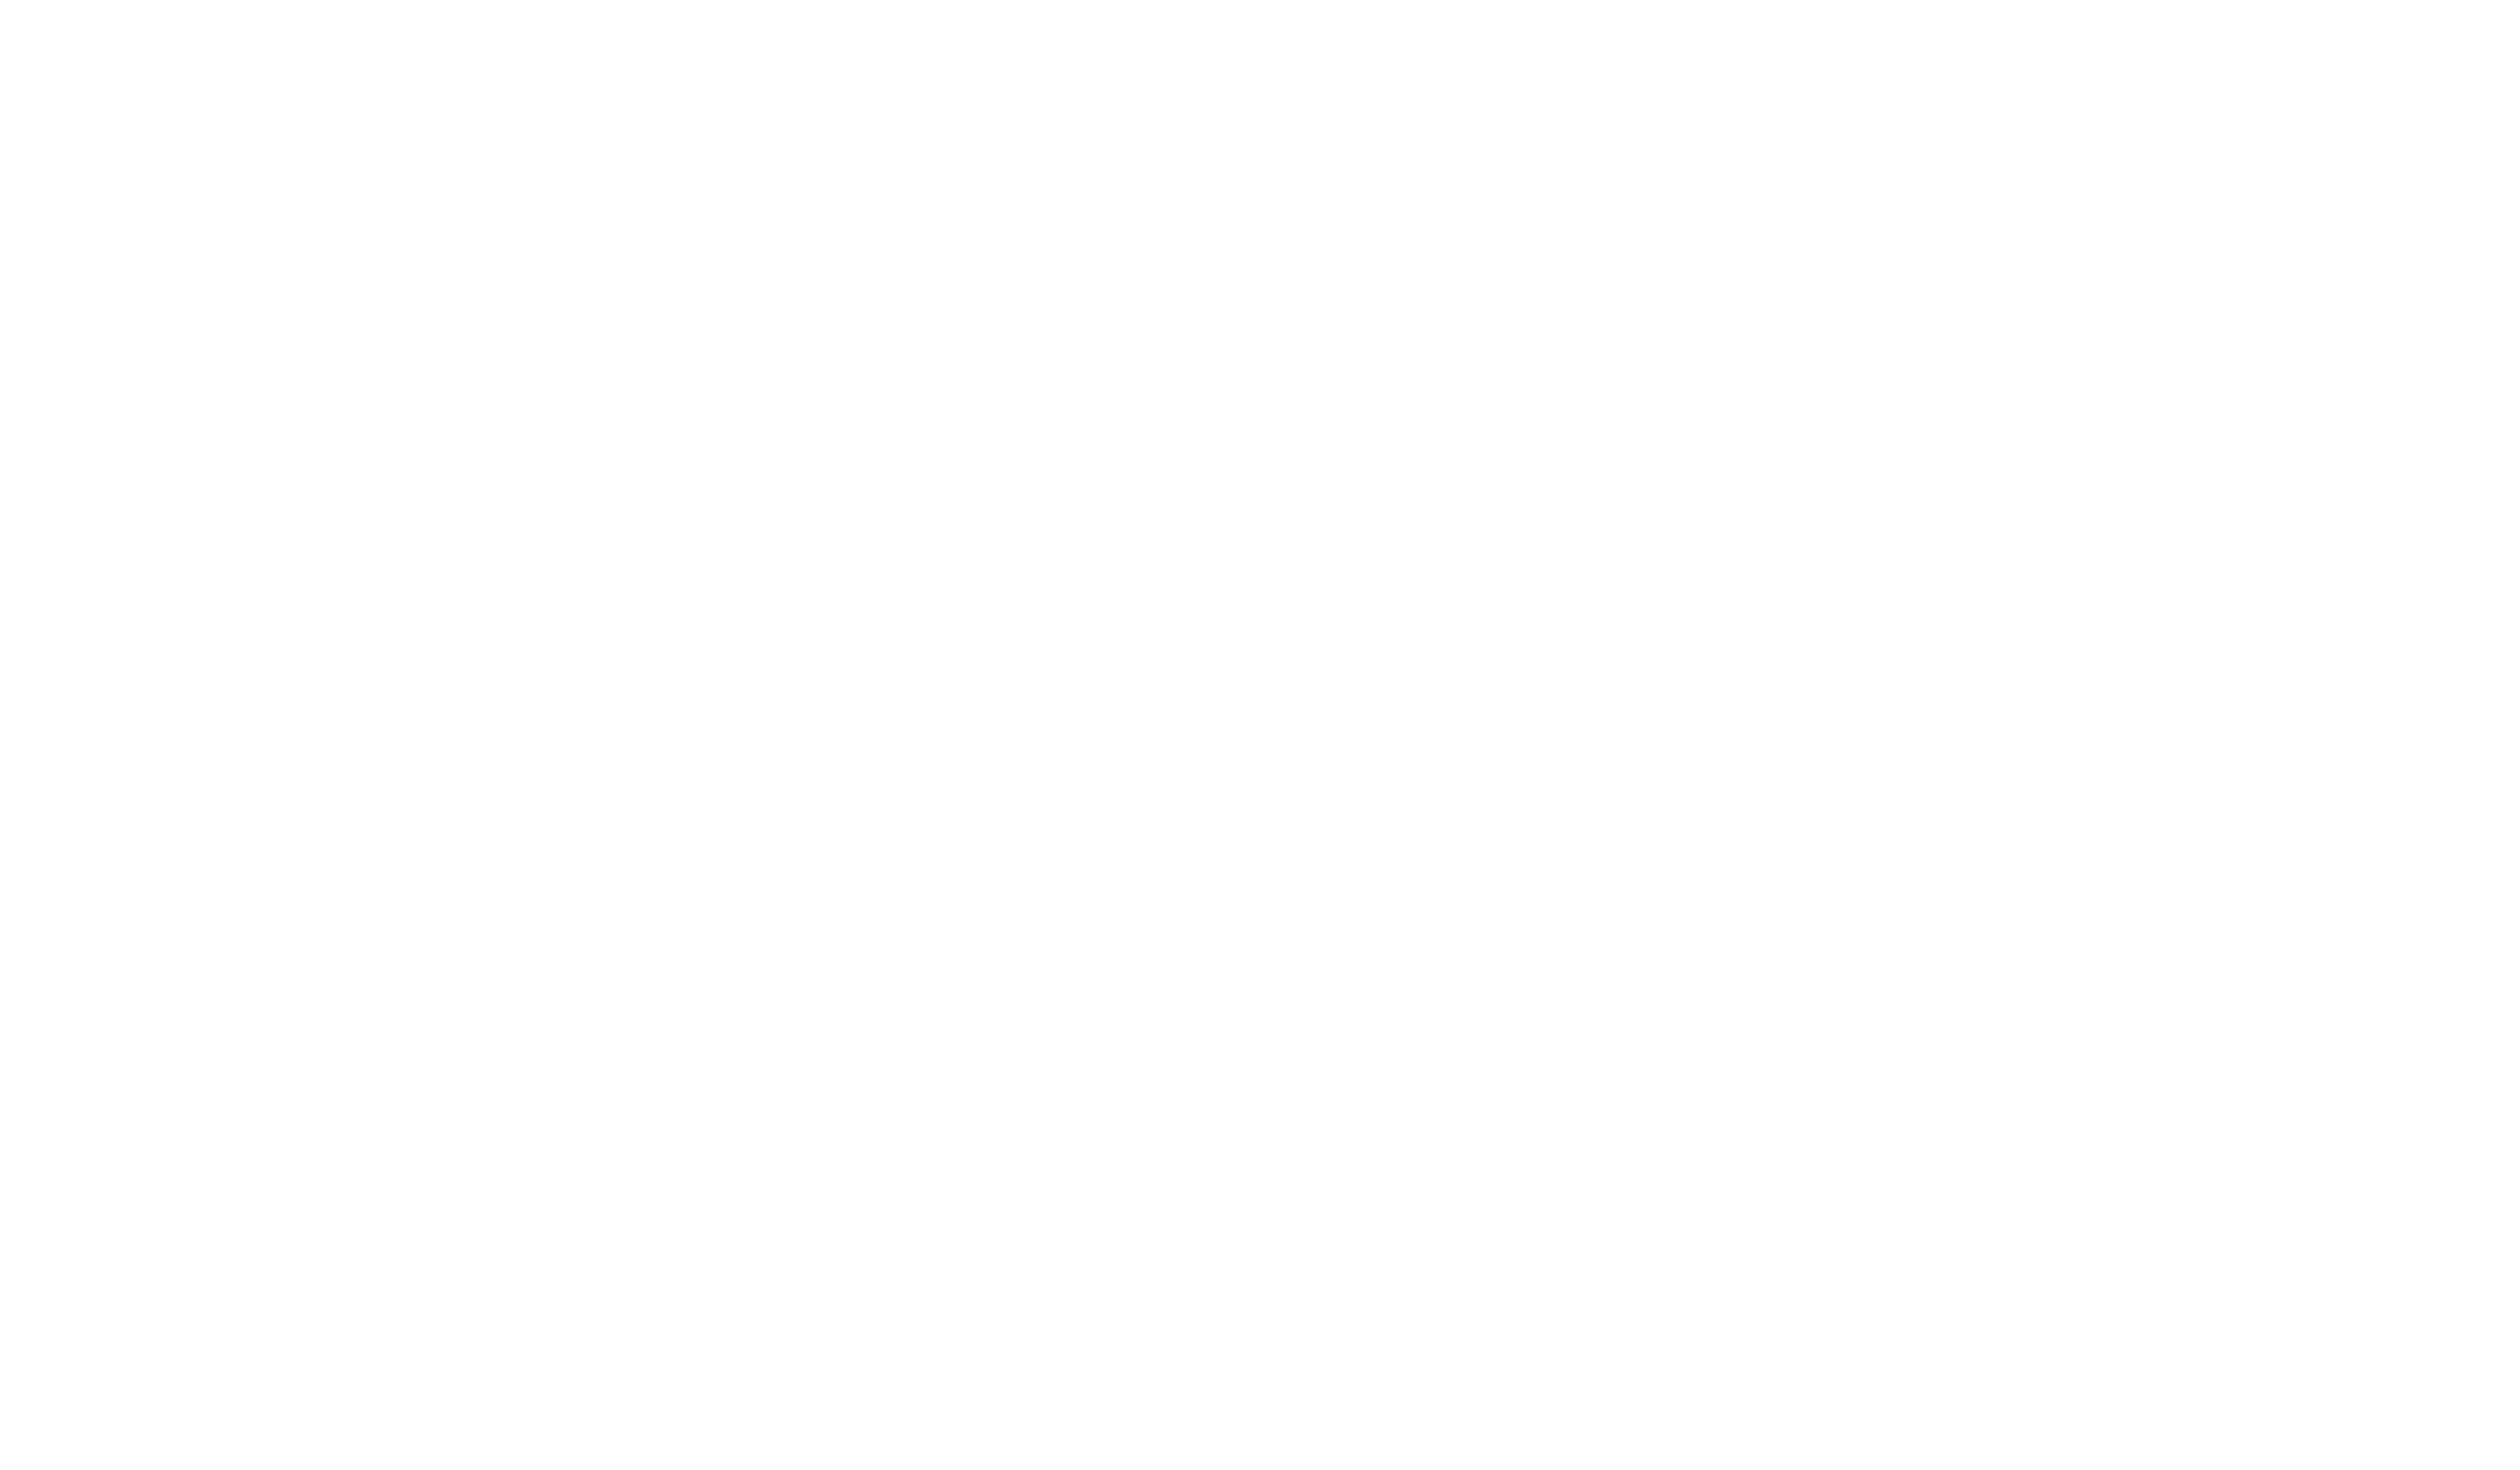 Virginia's Blue Ridge